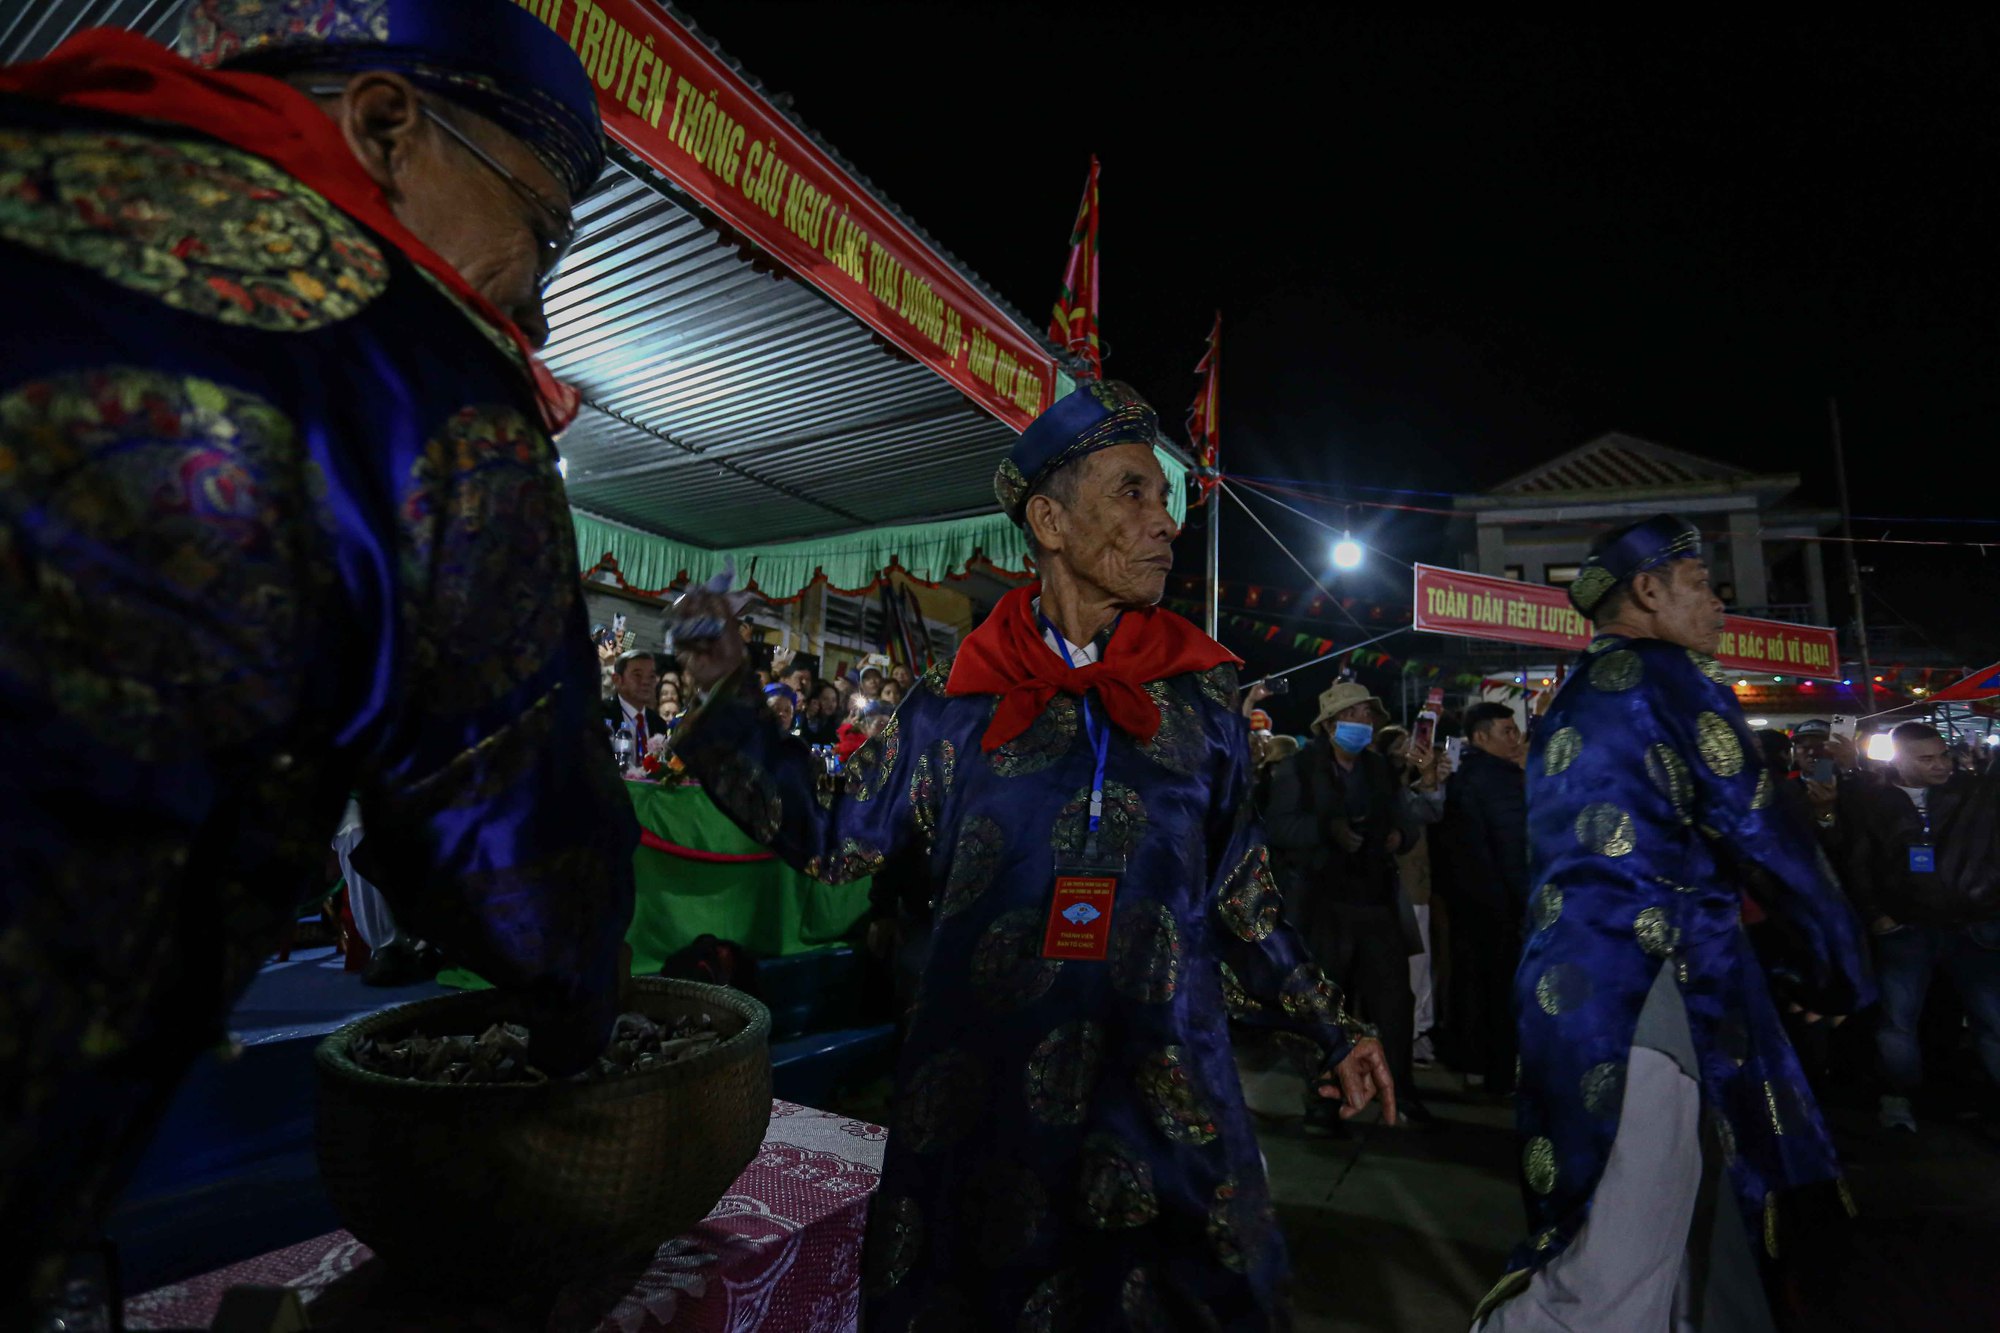 'Chen chân' dự lễ cầu ngư lớn nhất cố đô Huế - Ảnh 3.